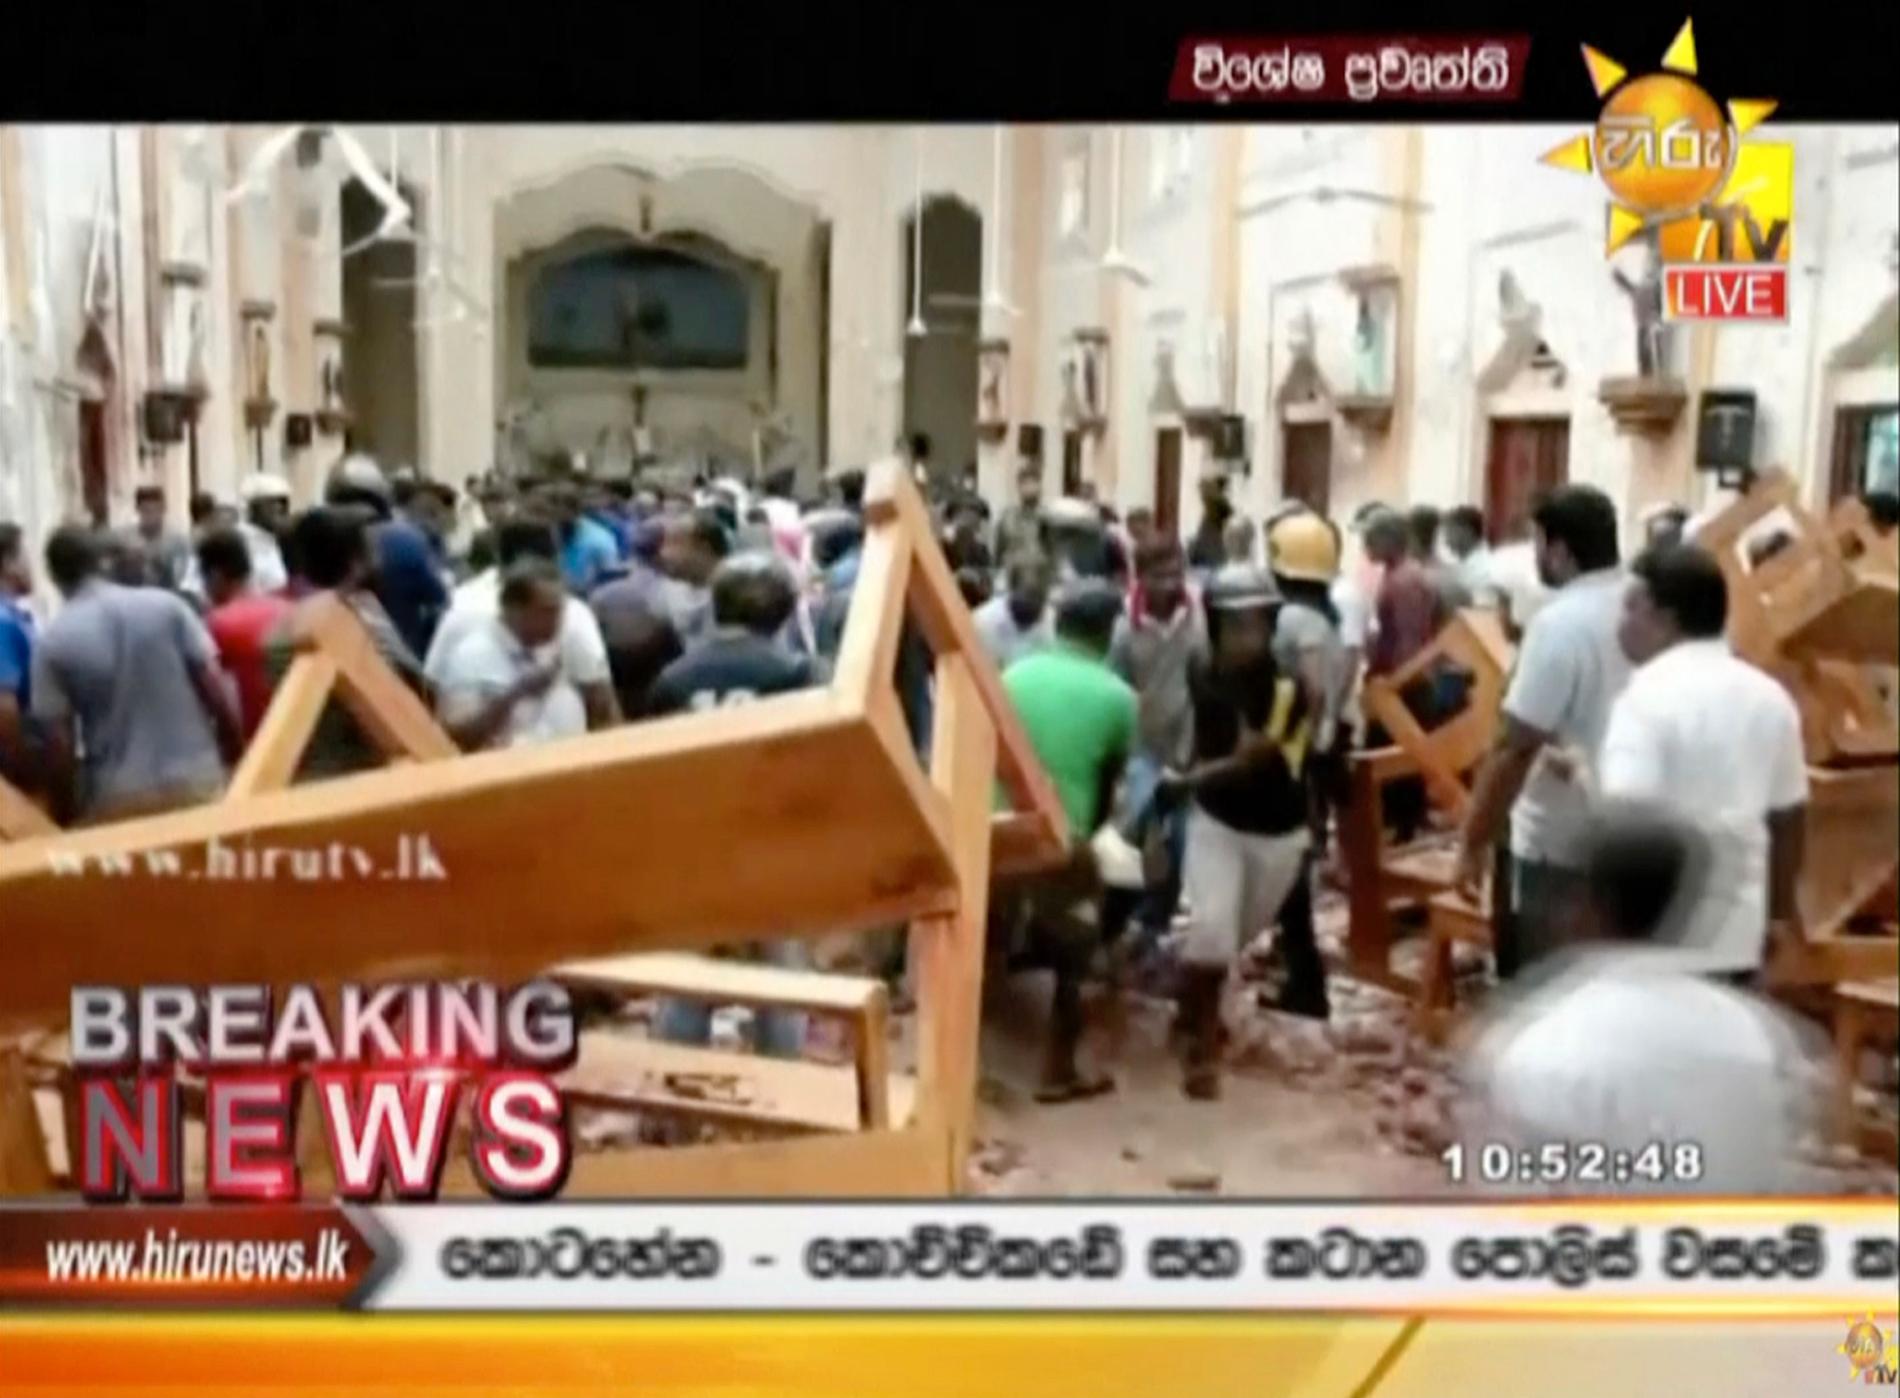 Stillbild från lankesisk tv visar förödelse i kyrkan St. Anthony i Colombo.